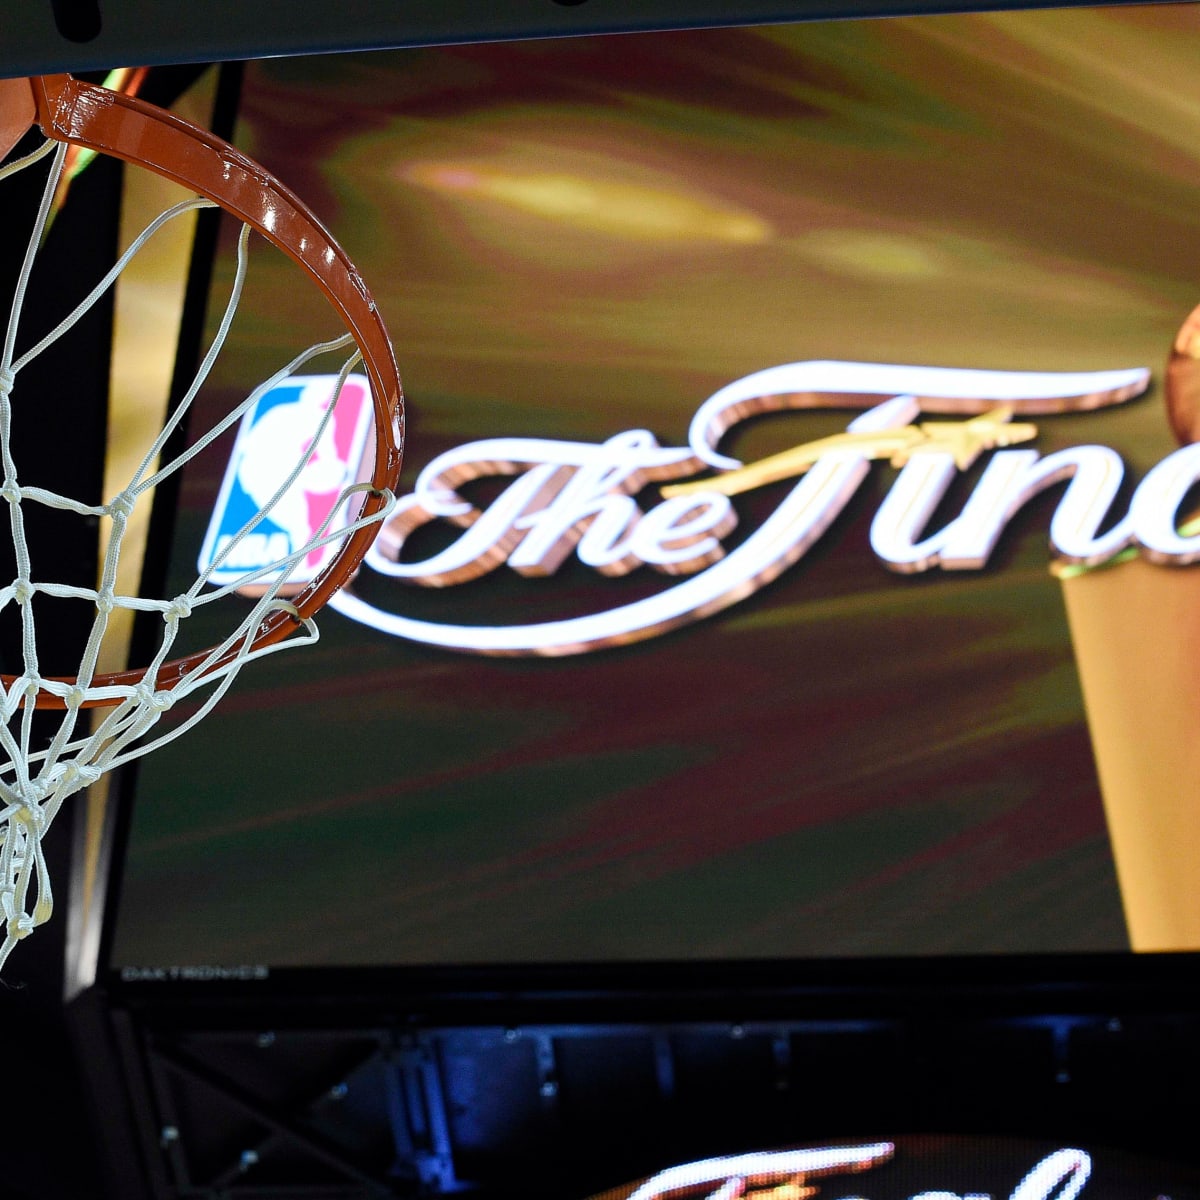 NBA Finals ganha logo com fonte icônica que homenageia história da liga, nba